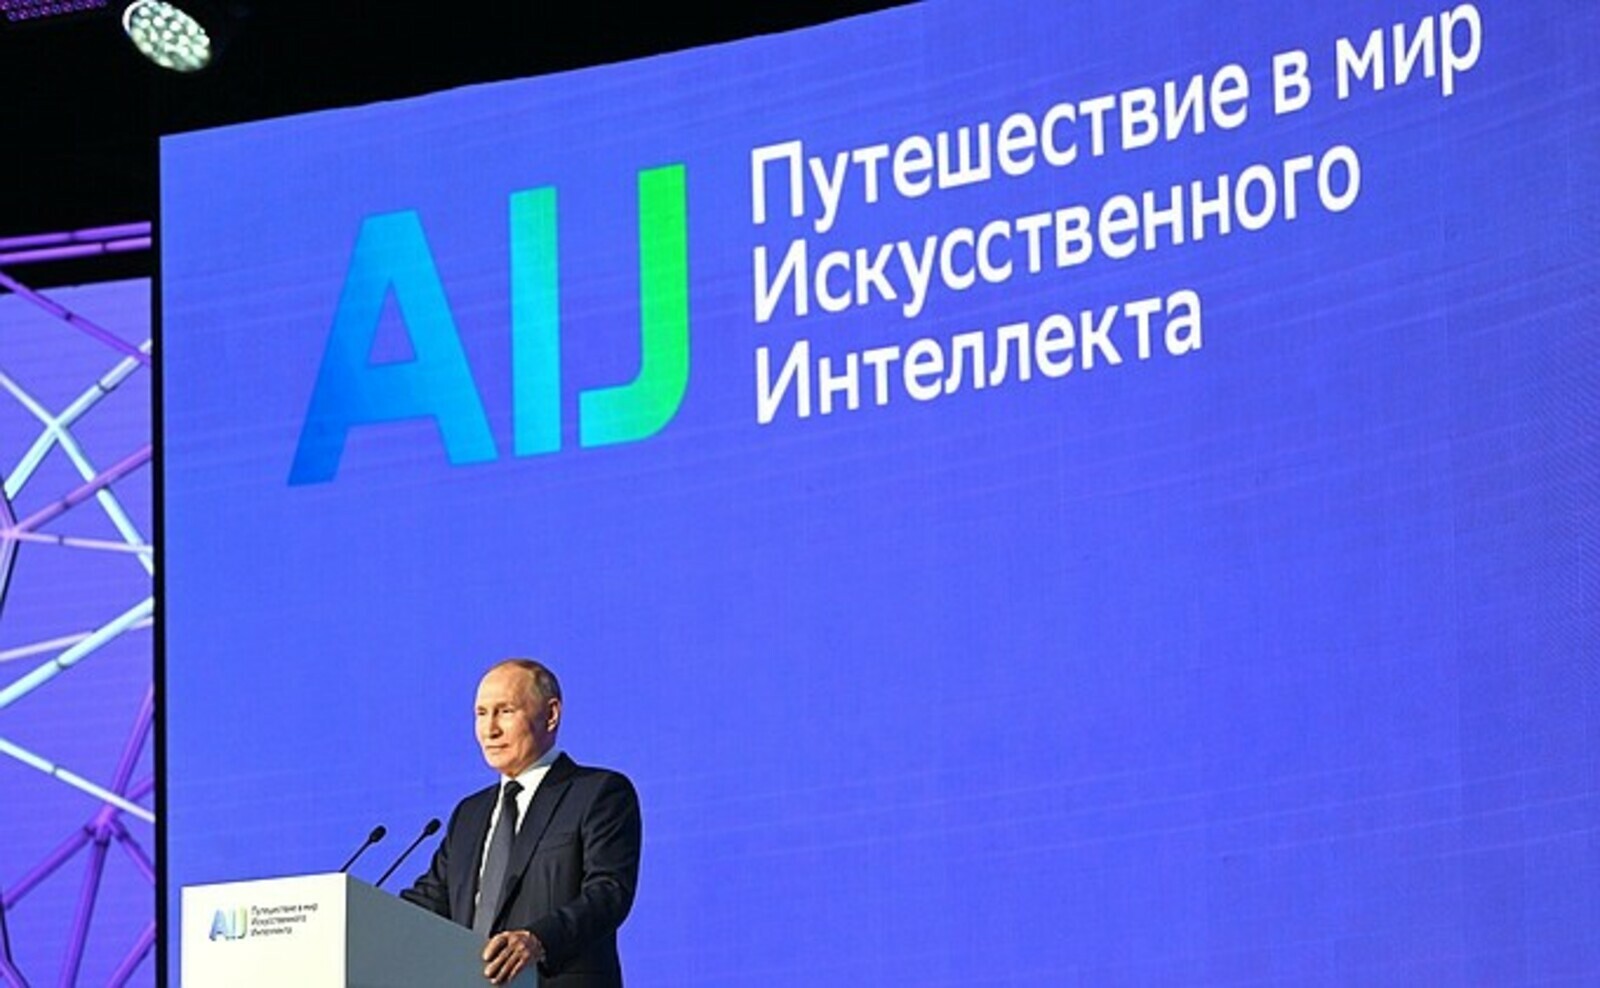 Владимир Путин принял участие в Конференции «Путешествие в мир искусственного интеллекта»